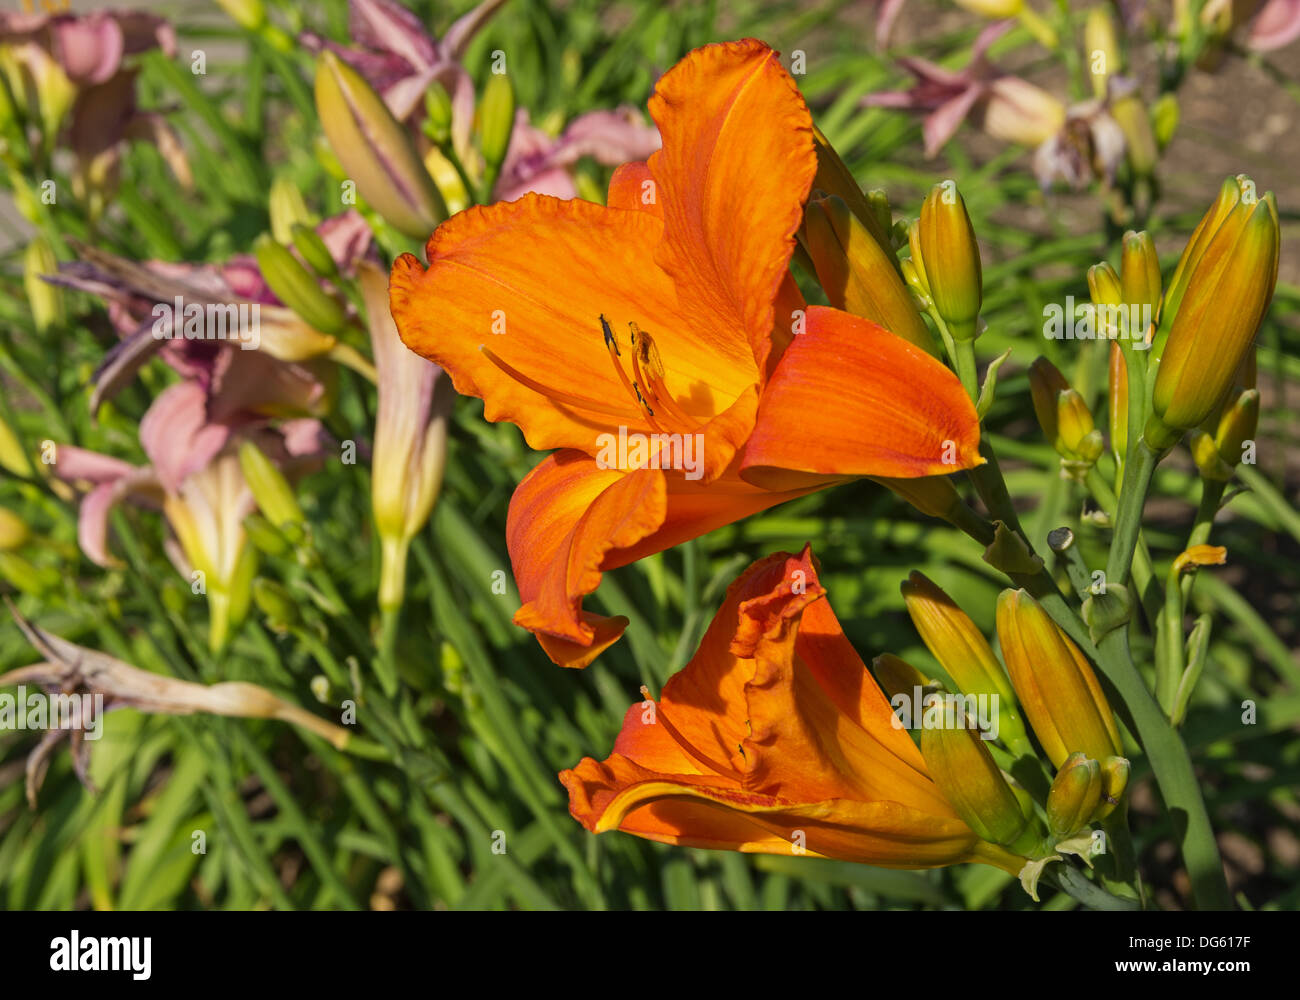 Orange Lilie Blume mit anderen Lilien im Hintergrund Stockfoto